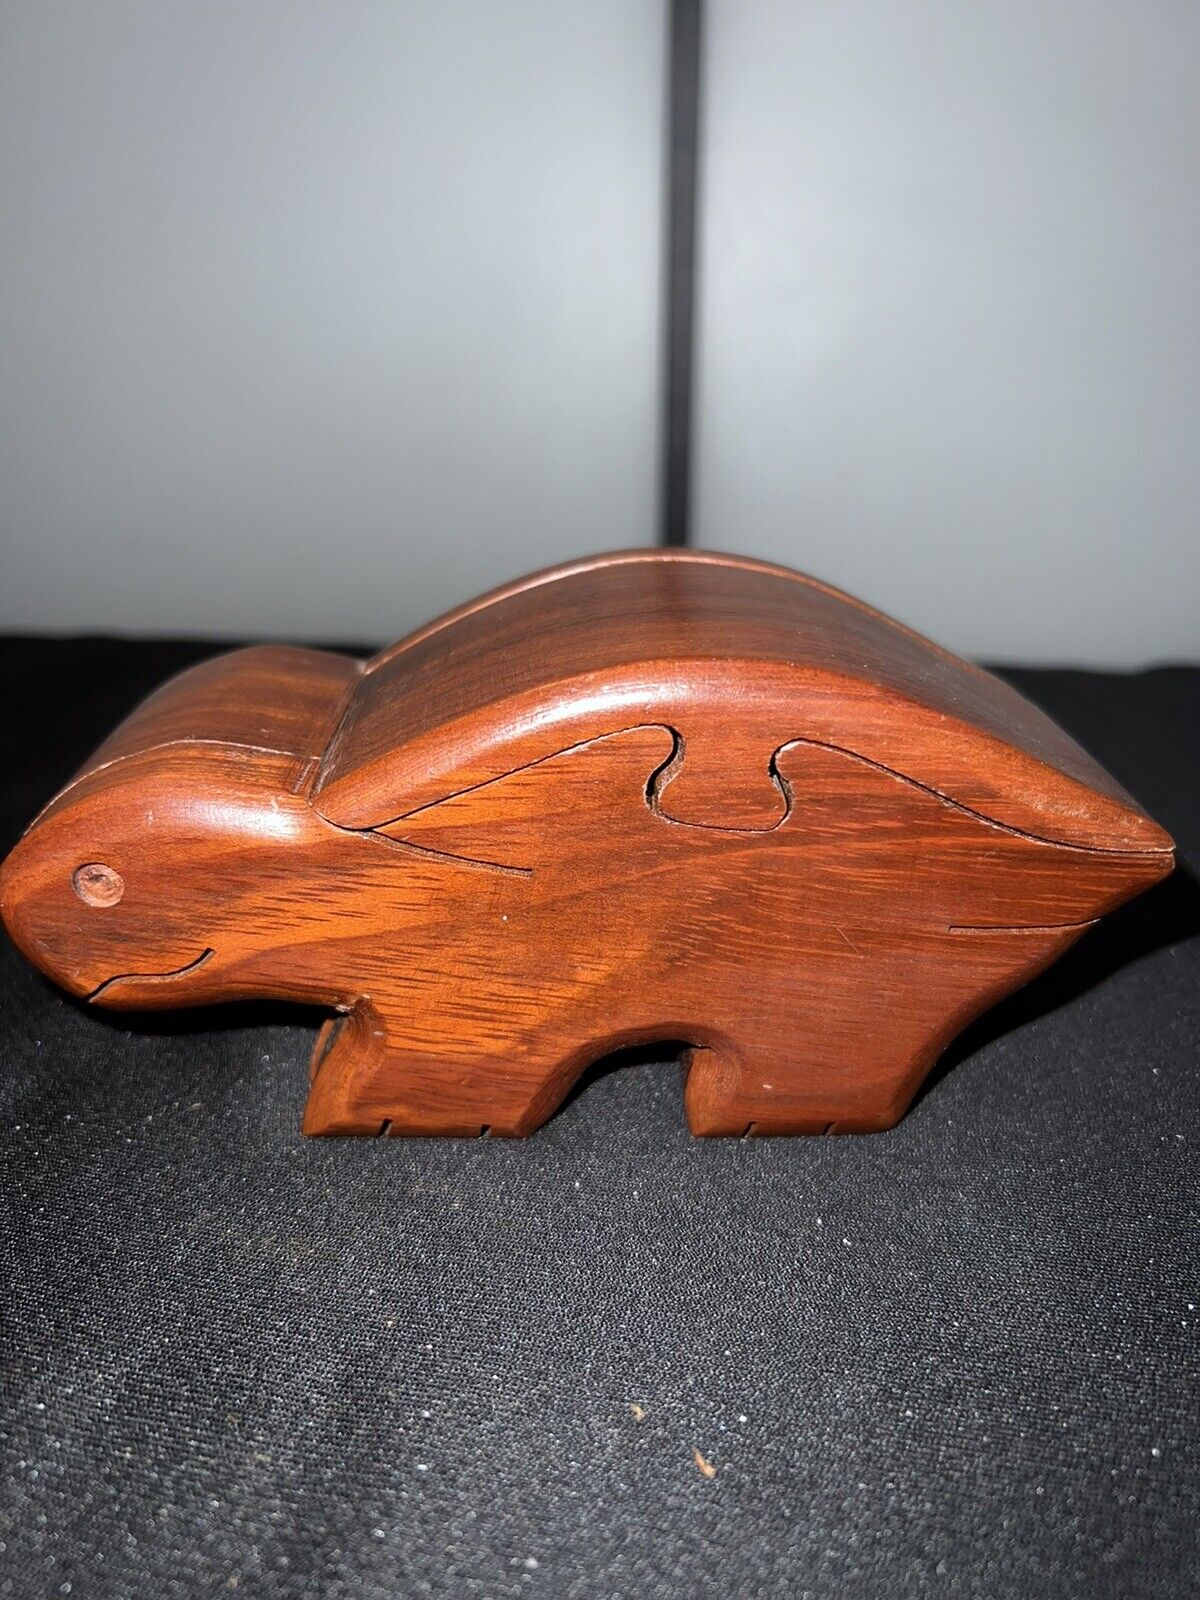 Wood Turtle Puzzle Box Jewelry Box Trinket Box 2.3/4 “ T- 5.3/4 “L-2.1/4 “w.NICE